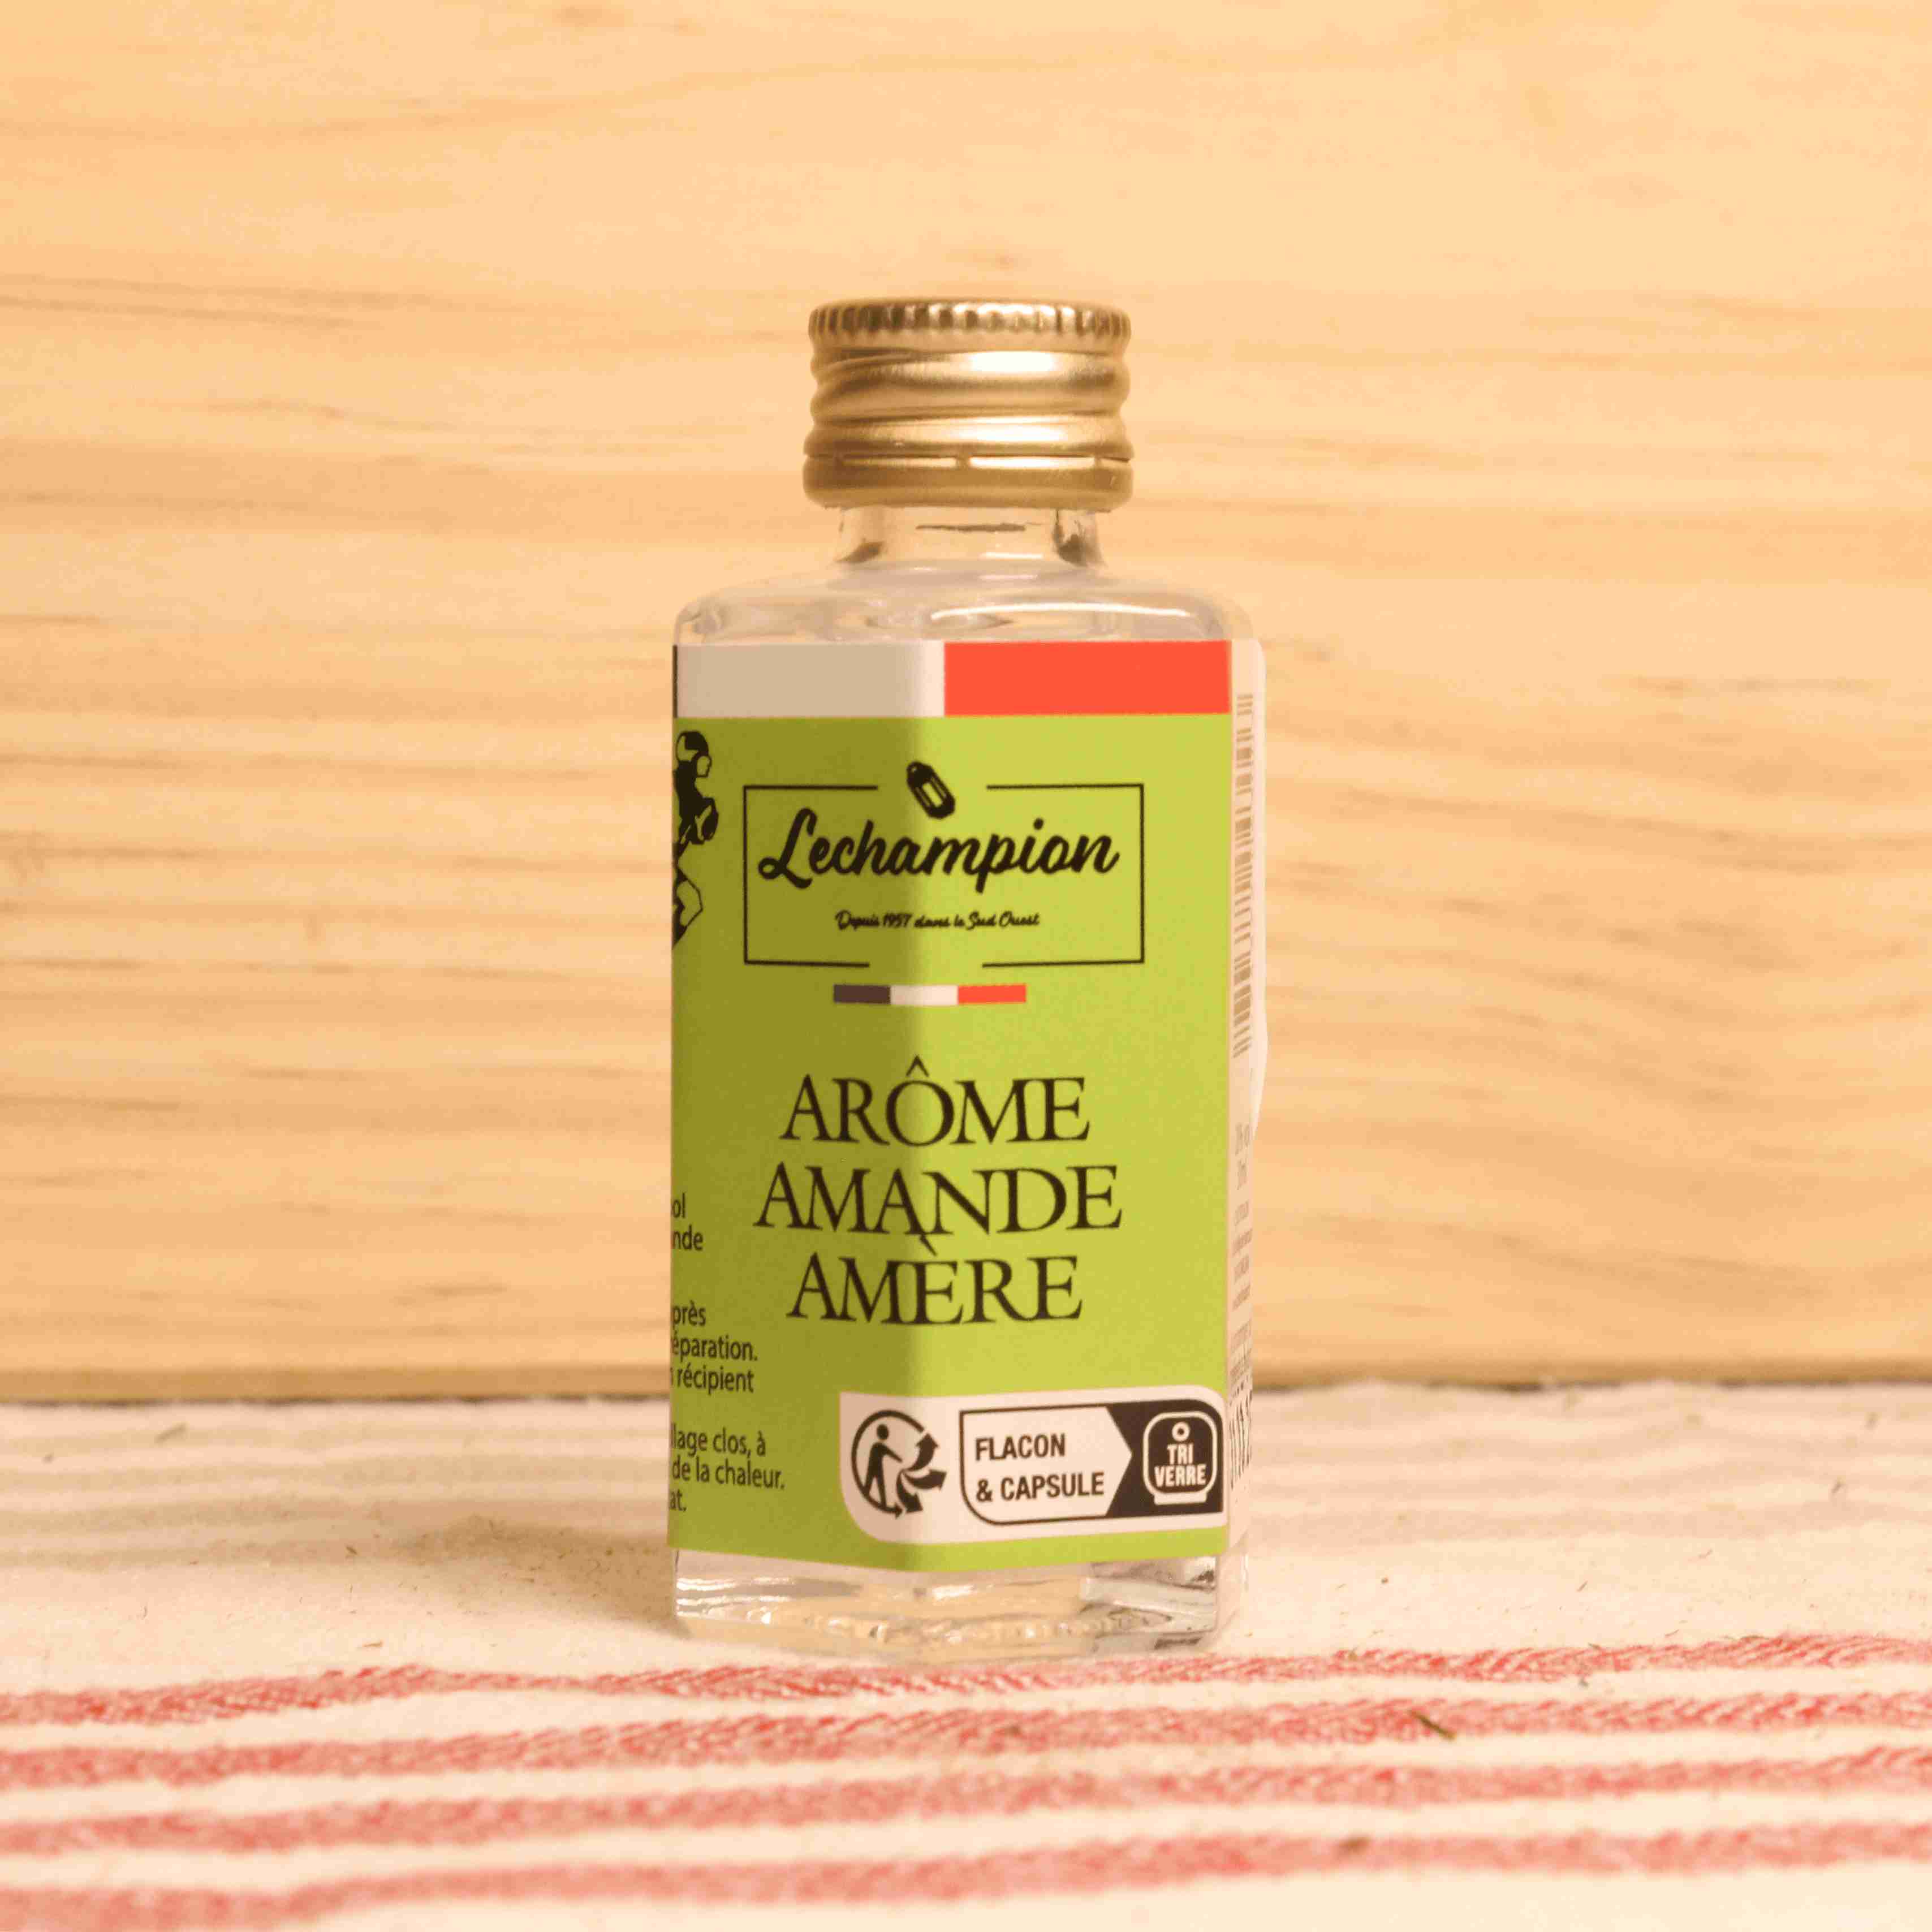 Arôme amande amère - Tablier Blanc - 20 ml